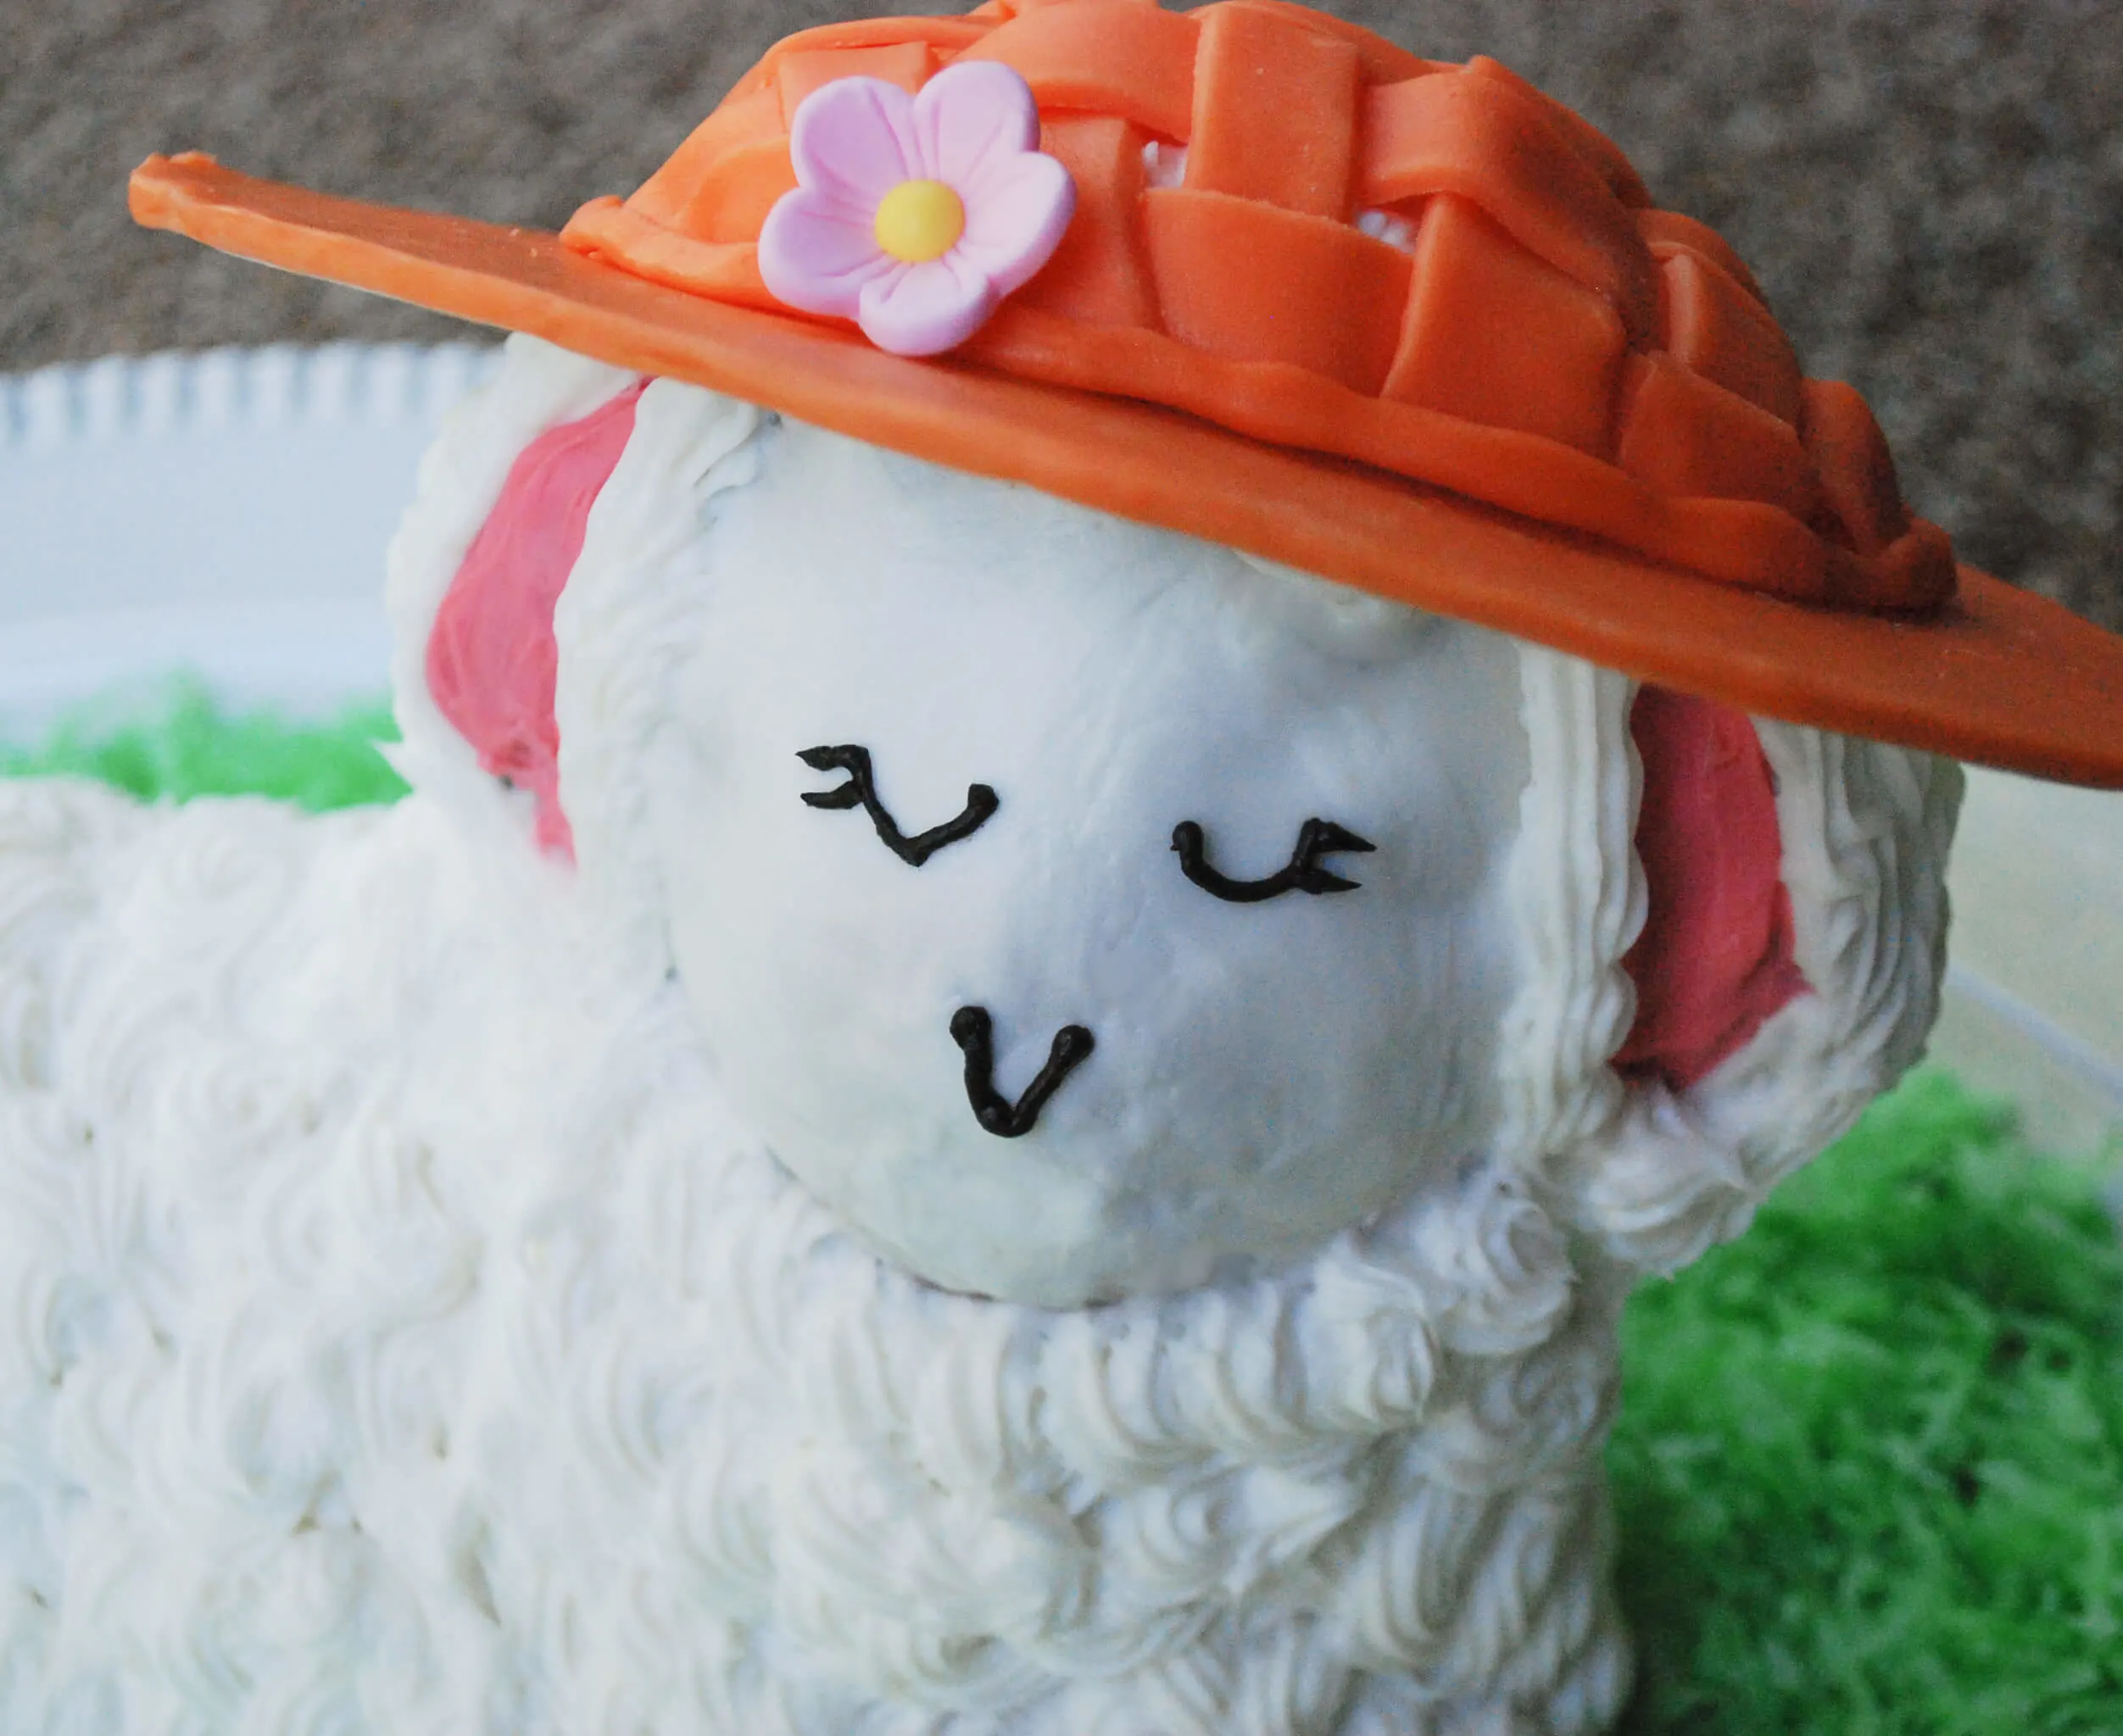 Make an edible Easter bonnet for a 3D standup lamb cake